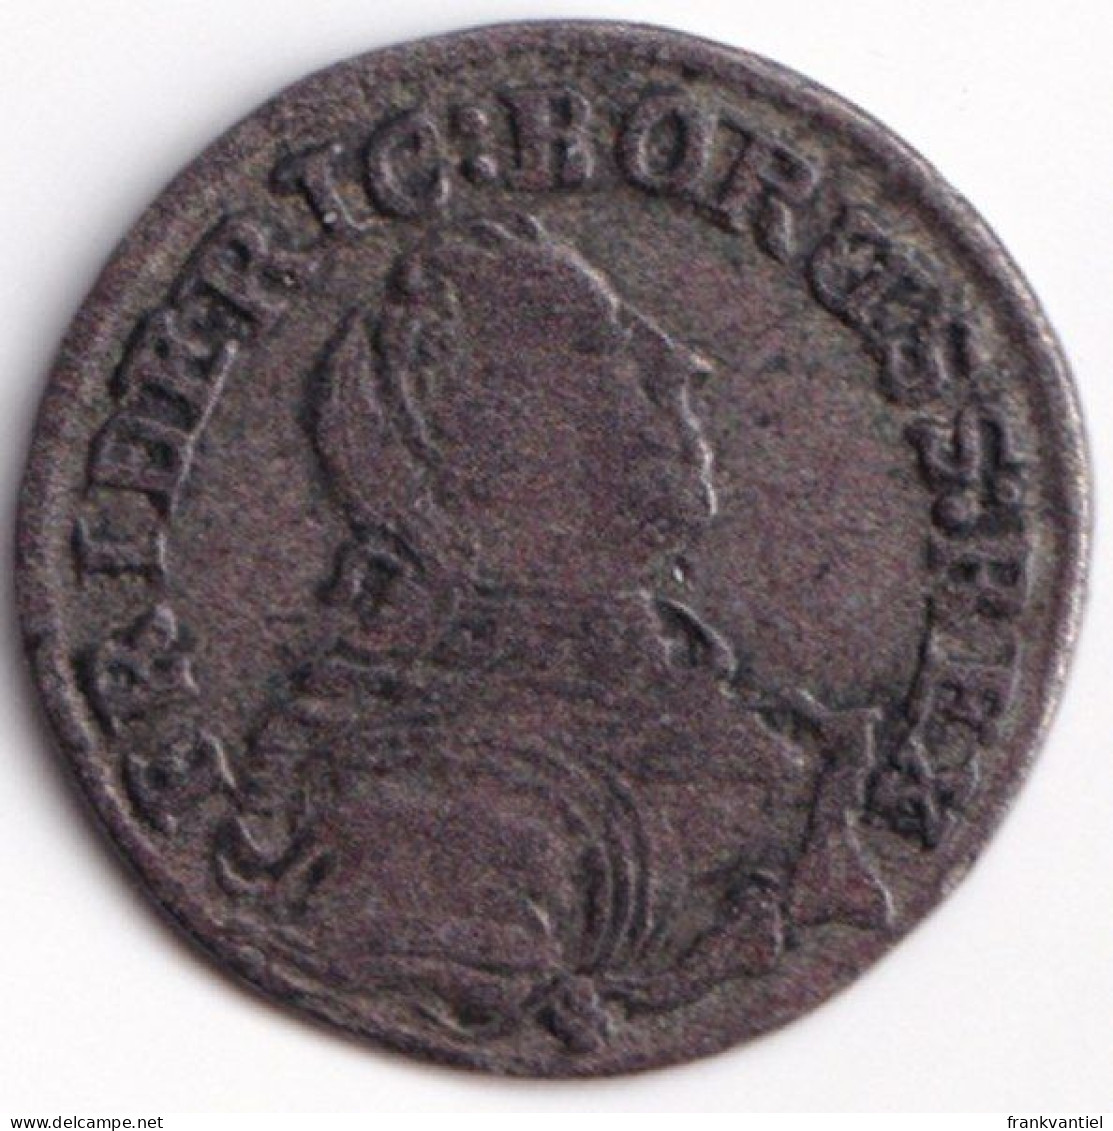 Schlesien / Silesia KM-921 2 Gröschel 1754 - Petites Monnaies & Autres Subdivisions